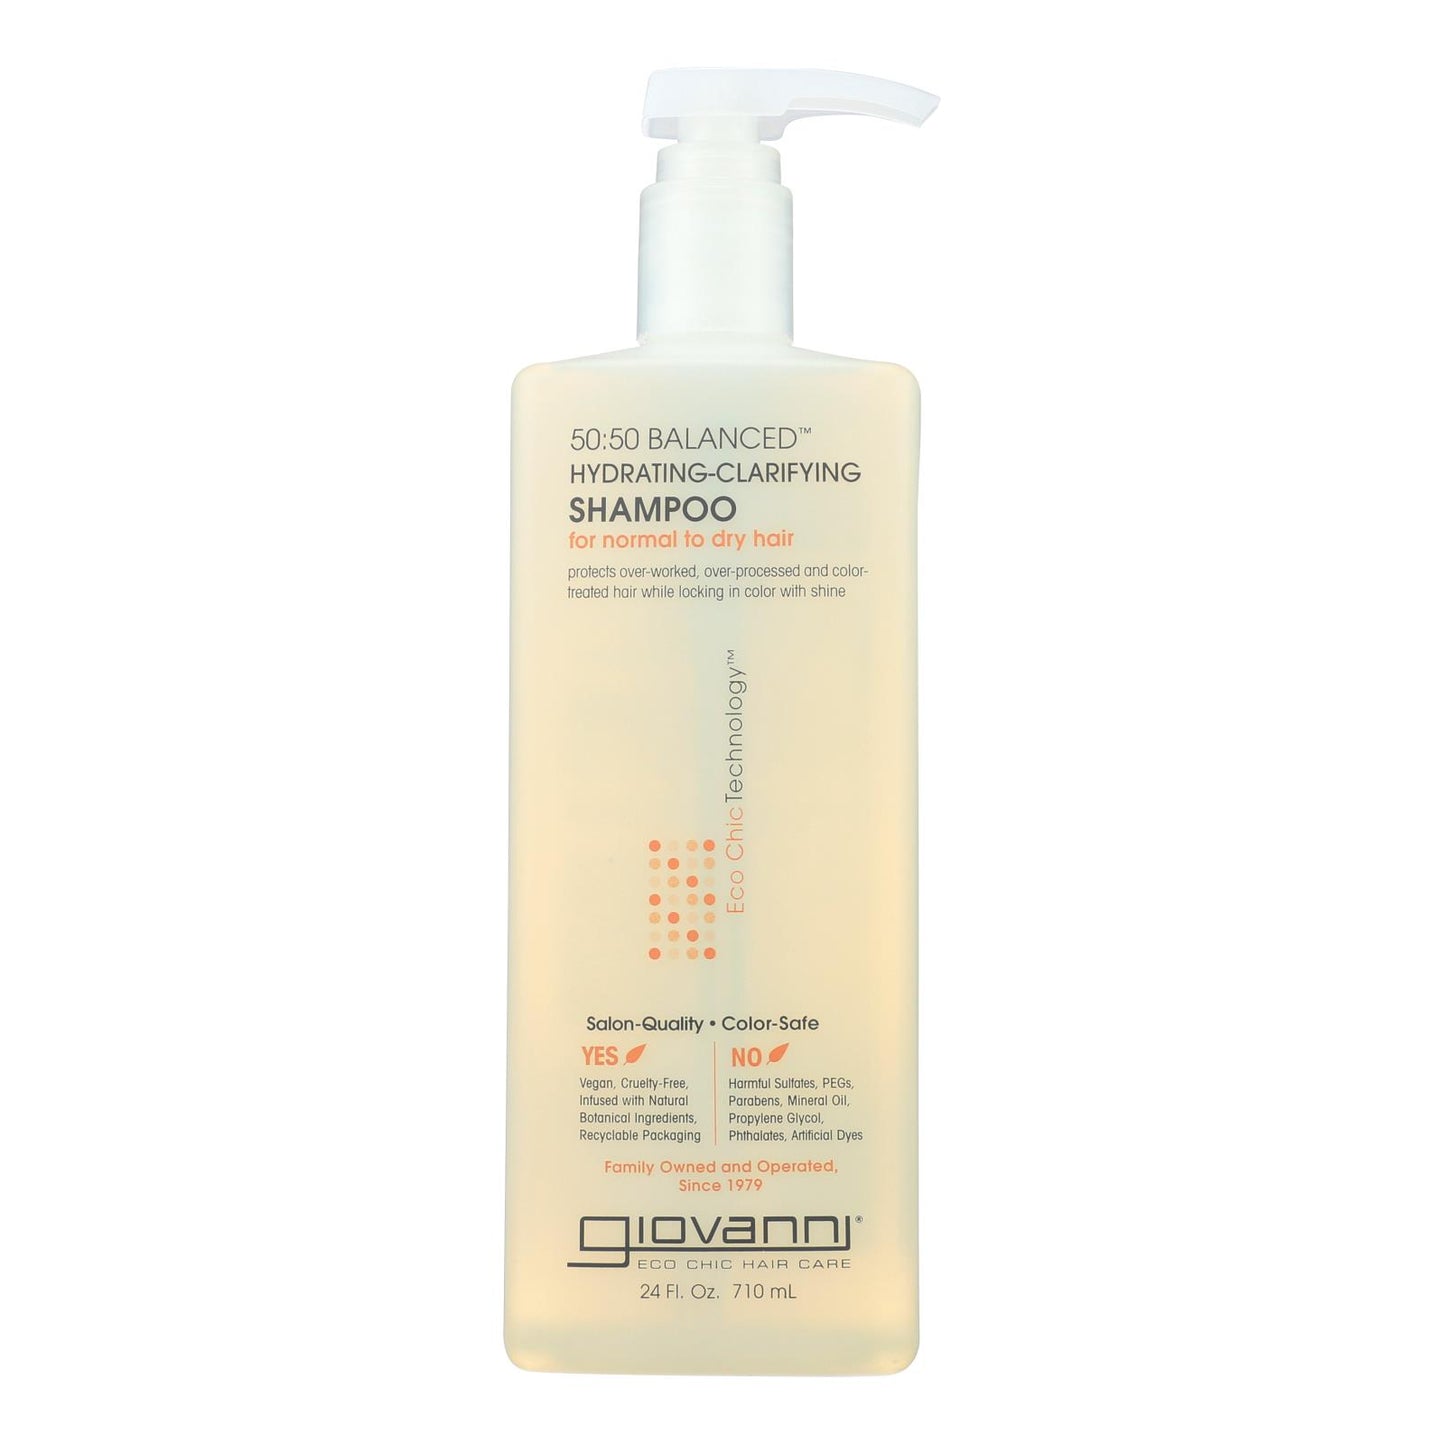 
                  
                    Giovanni 50:50 Balanced Hydrating-Clarifying Shampoo - 24 fl oz.
                  
                